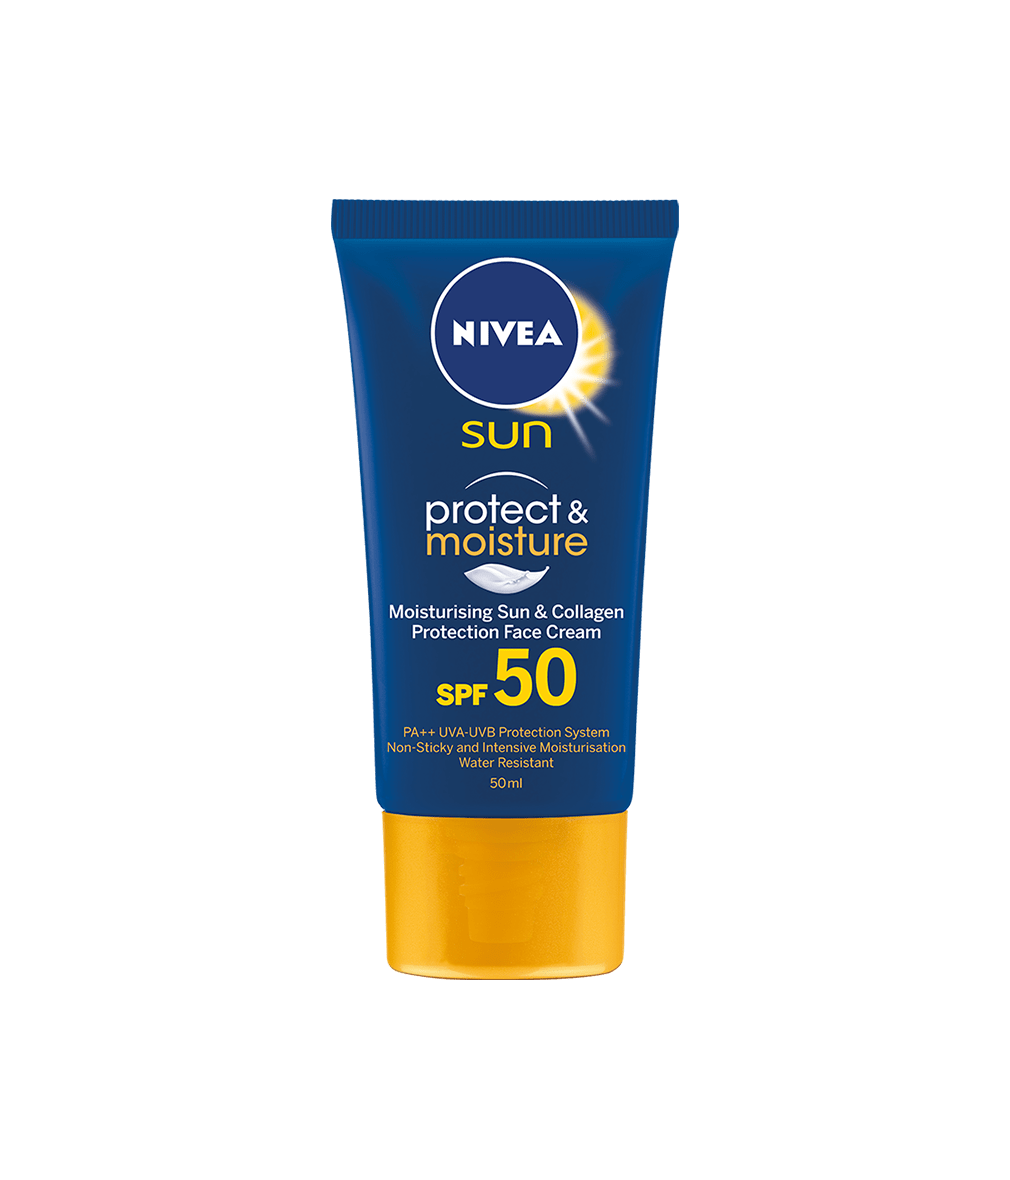 sunscreen cream for face